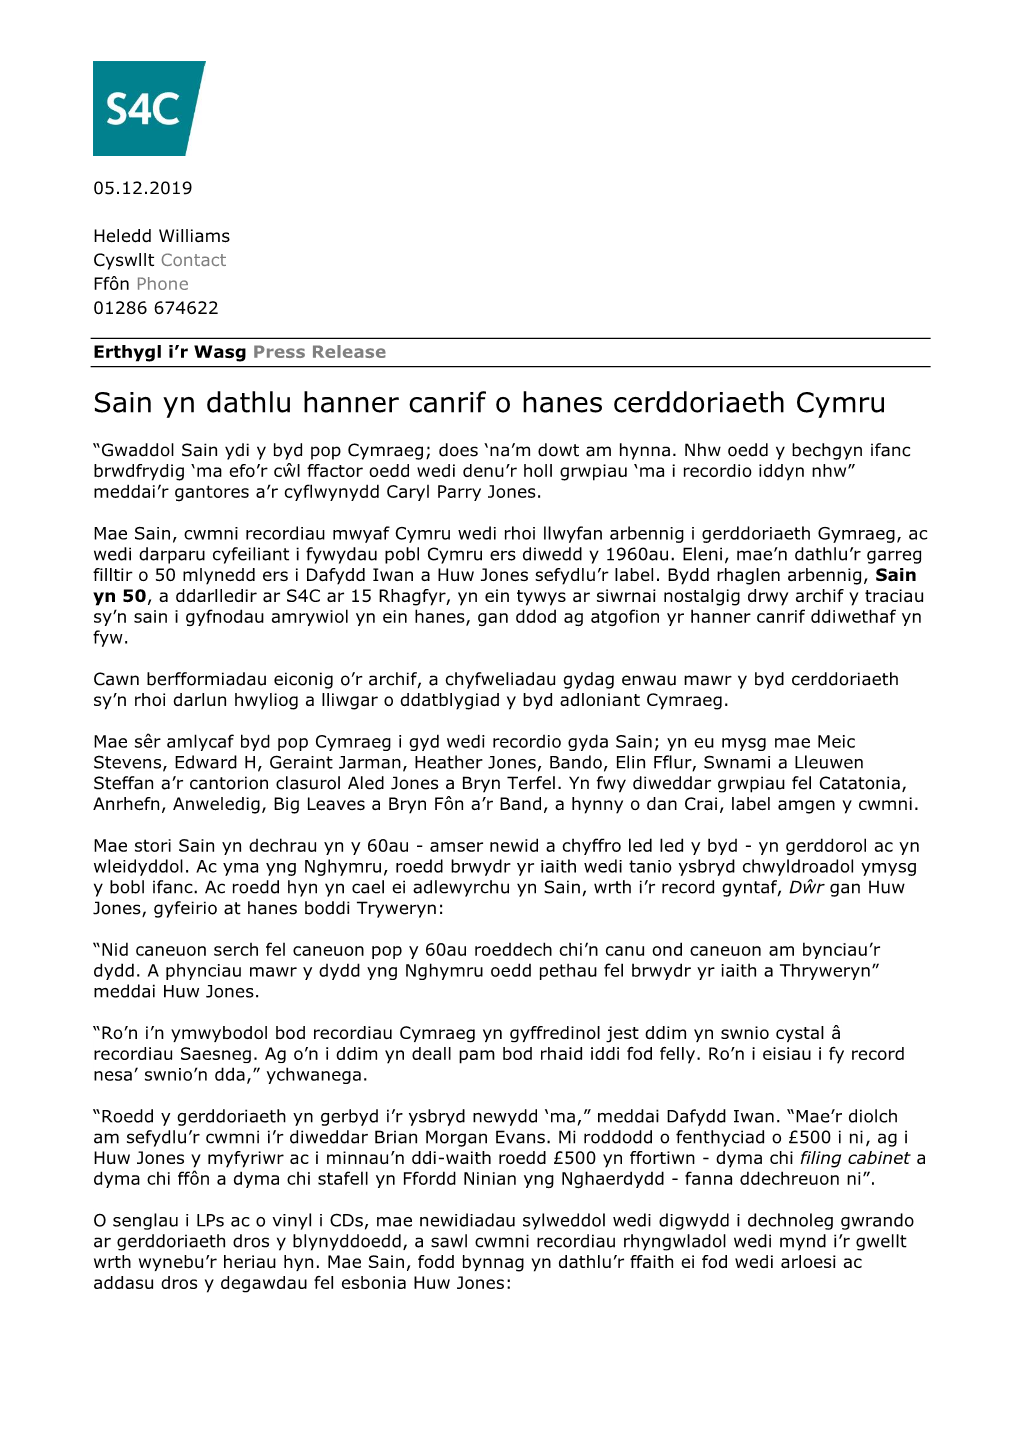 Sain Yn Dathlu Hanner Canrif O Hanes Cerddoriaeth Cymru